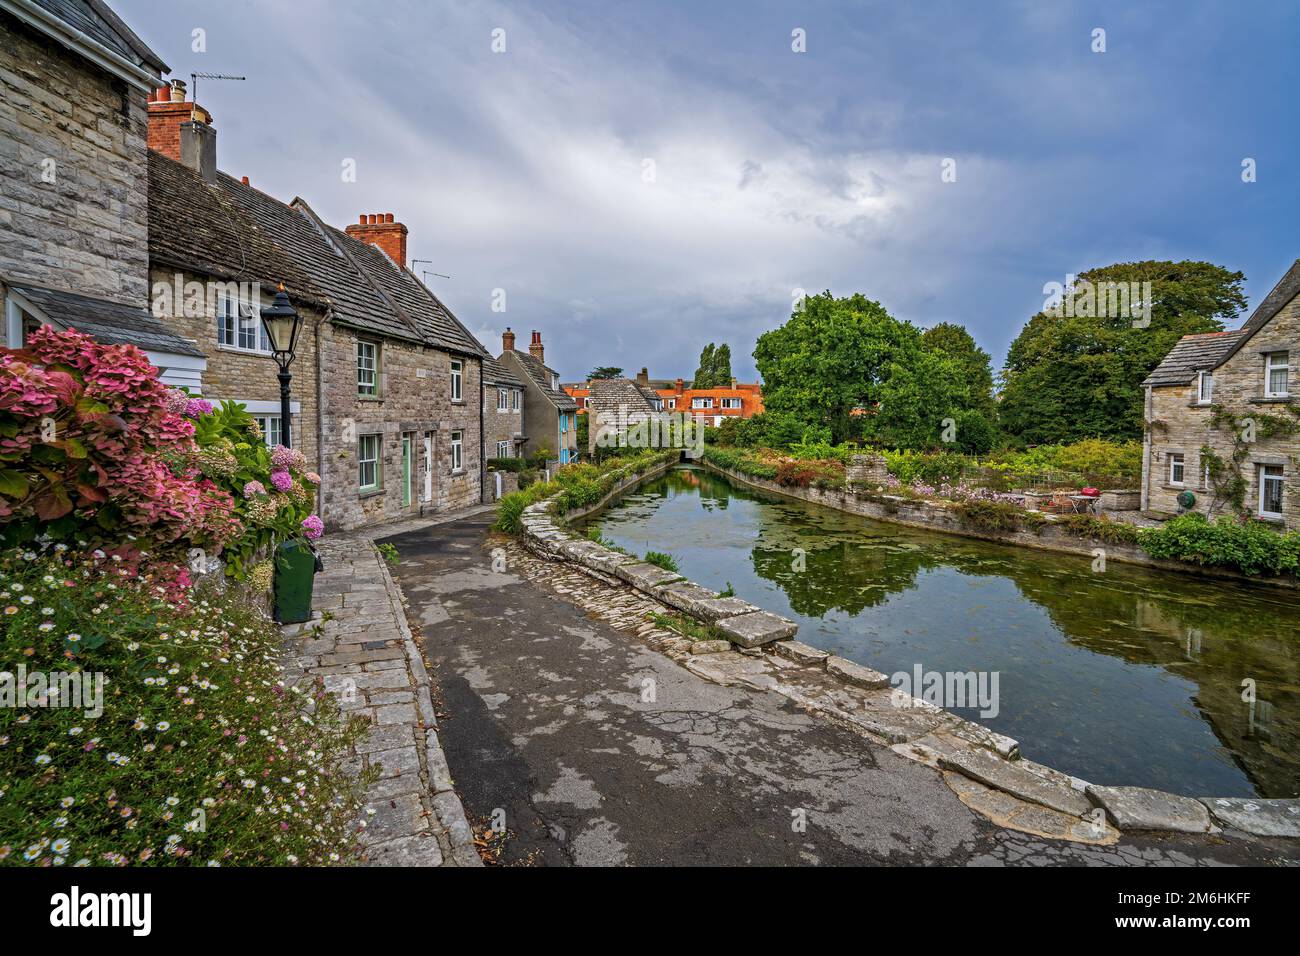 Les cottages de Mill Pond, Swanage, Dorset, Angleterre, Royaume-Uni Banque D'Images